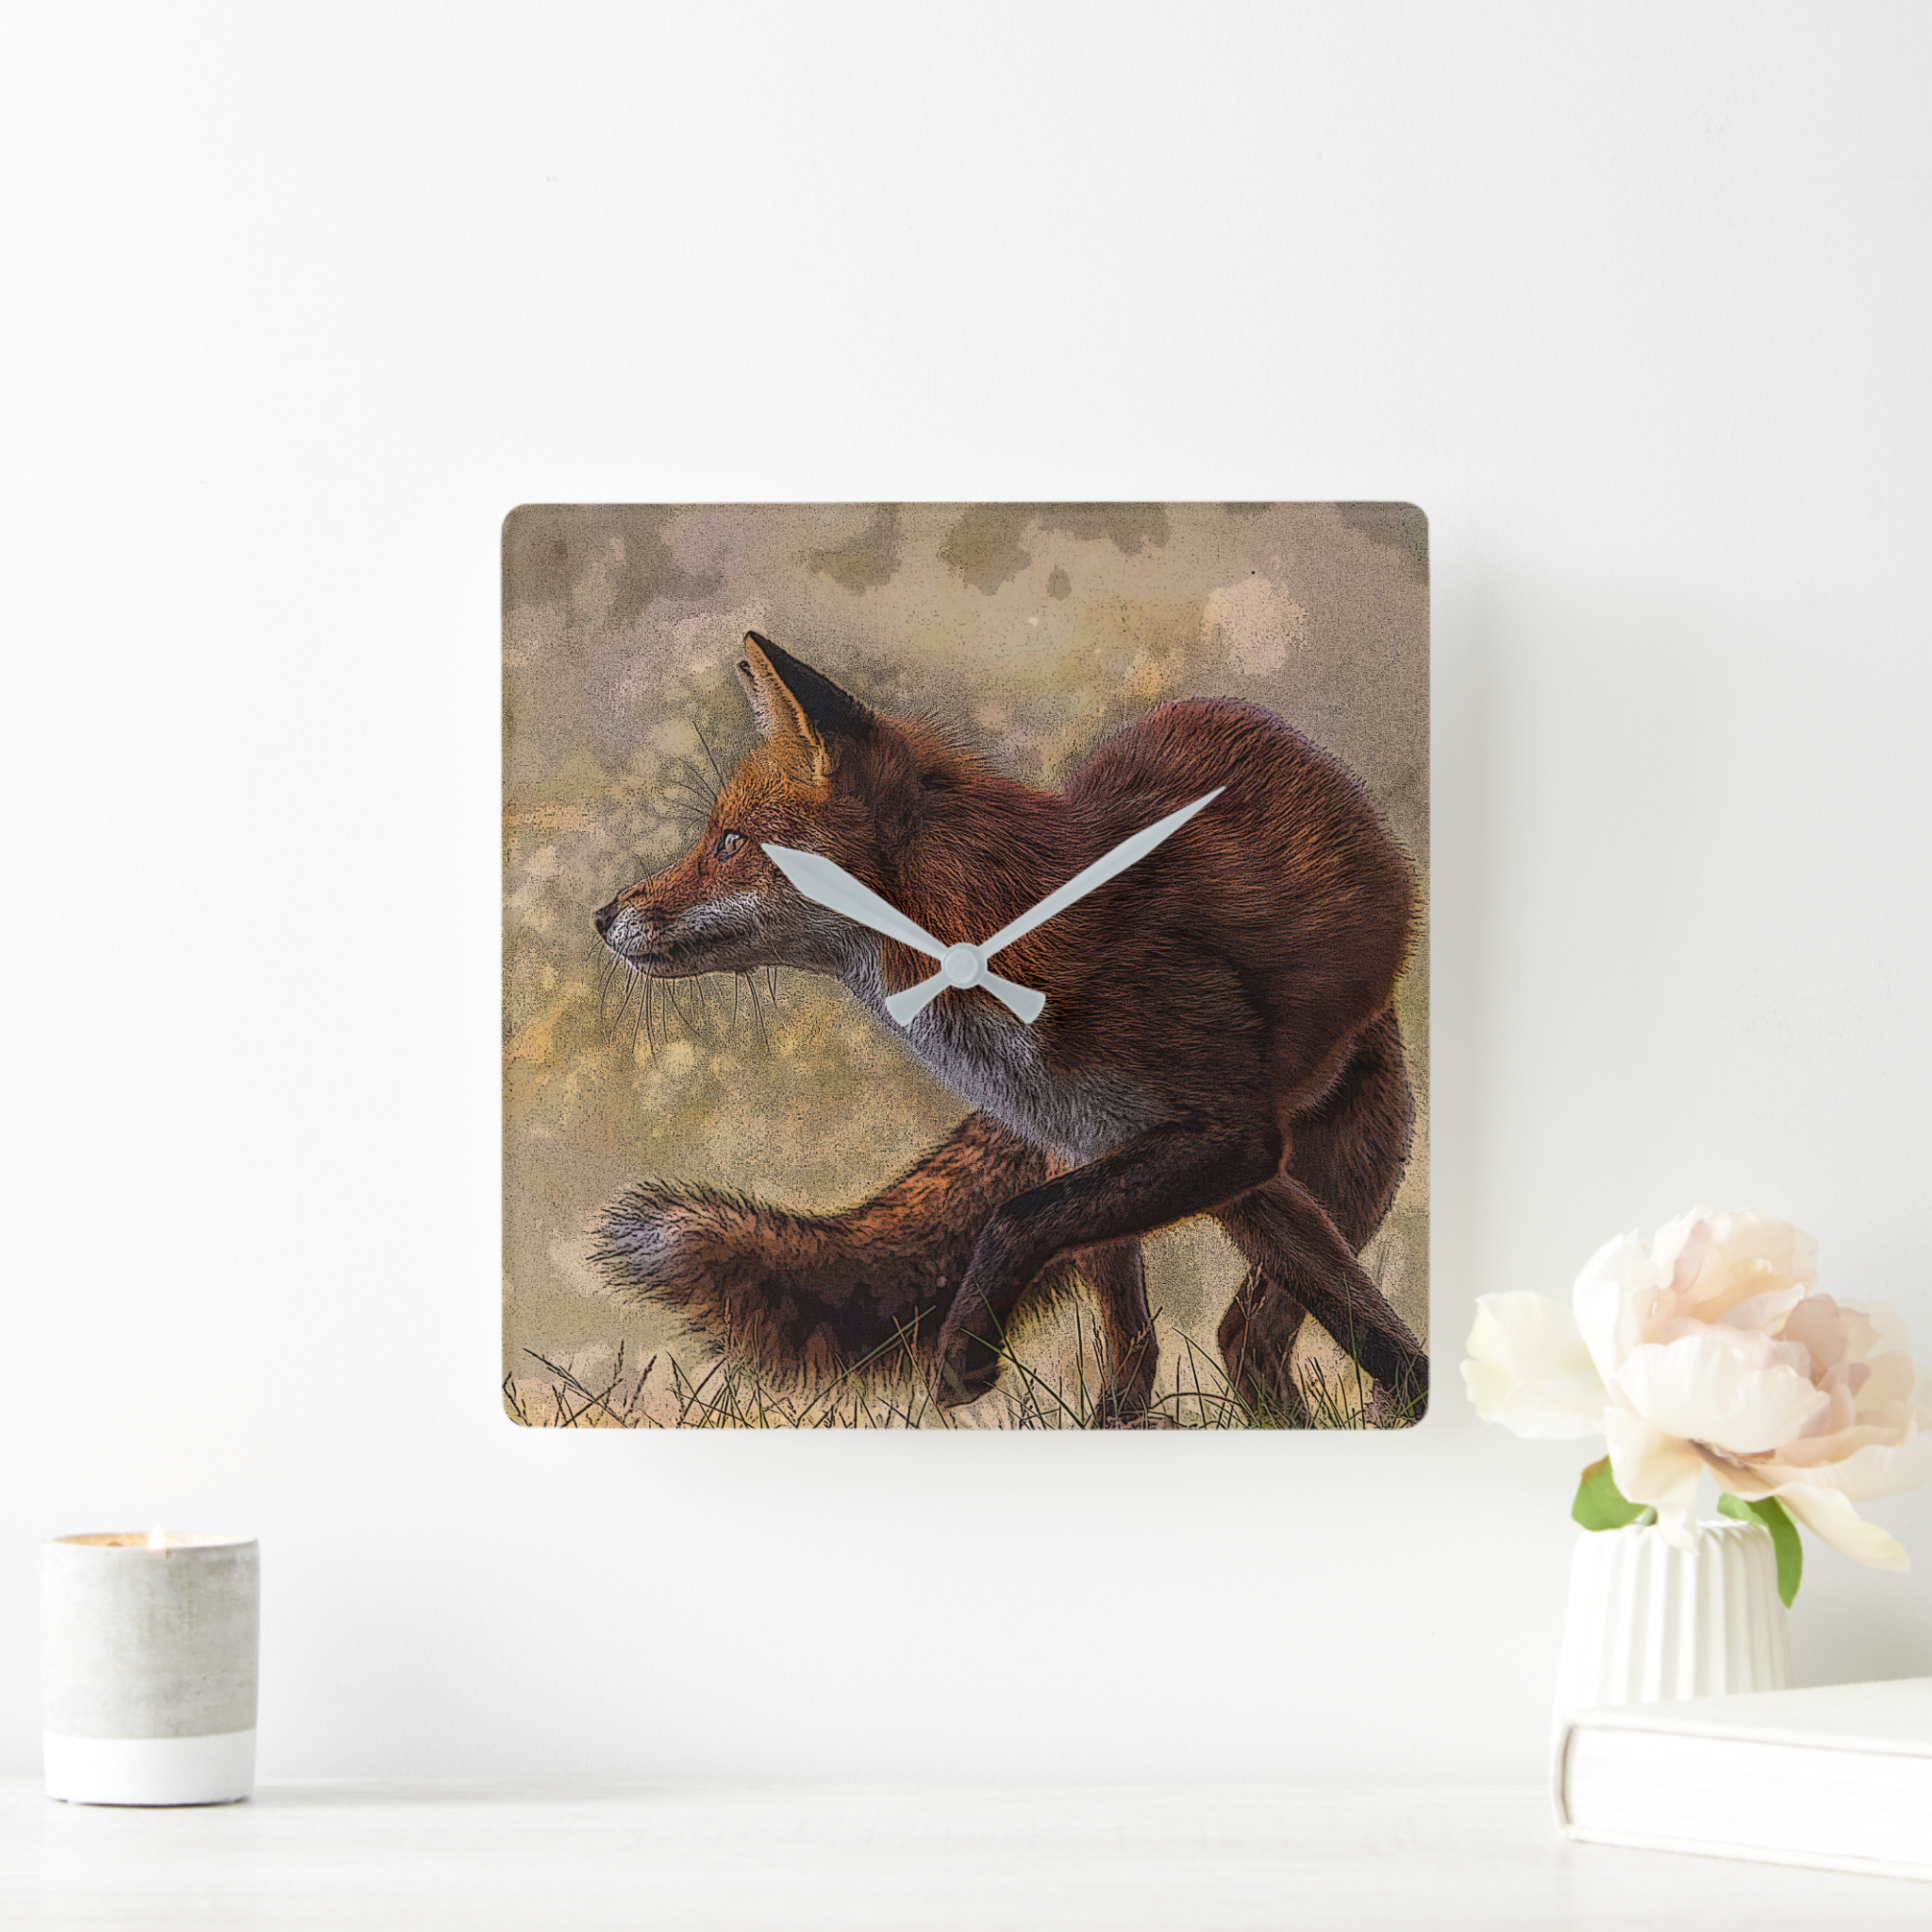 Zazzle – Mockup – fox square wall clock